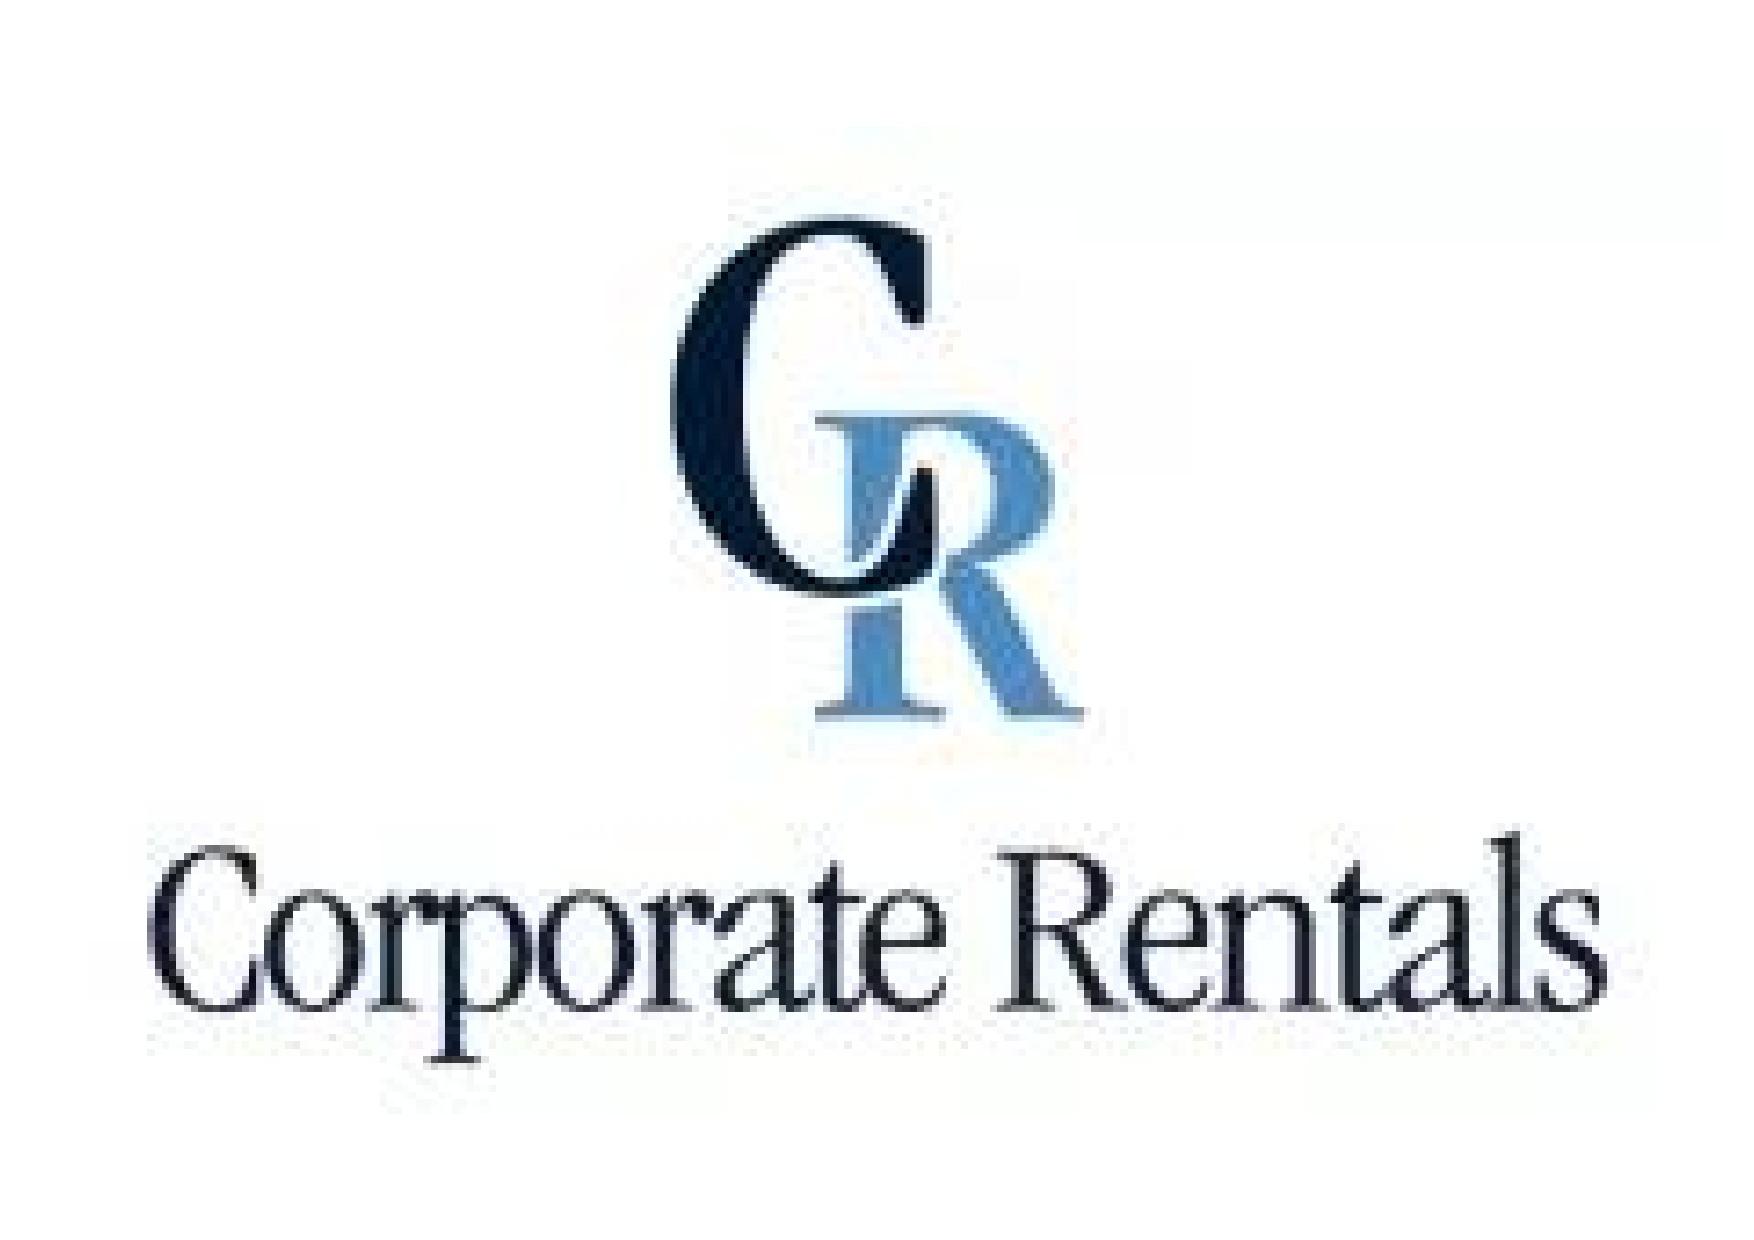 Avatar: Corporate rentals